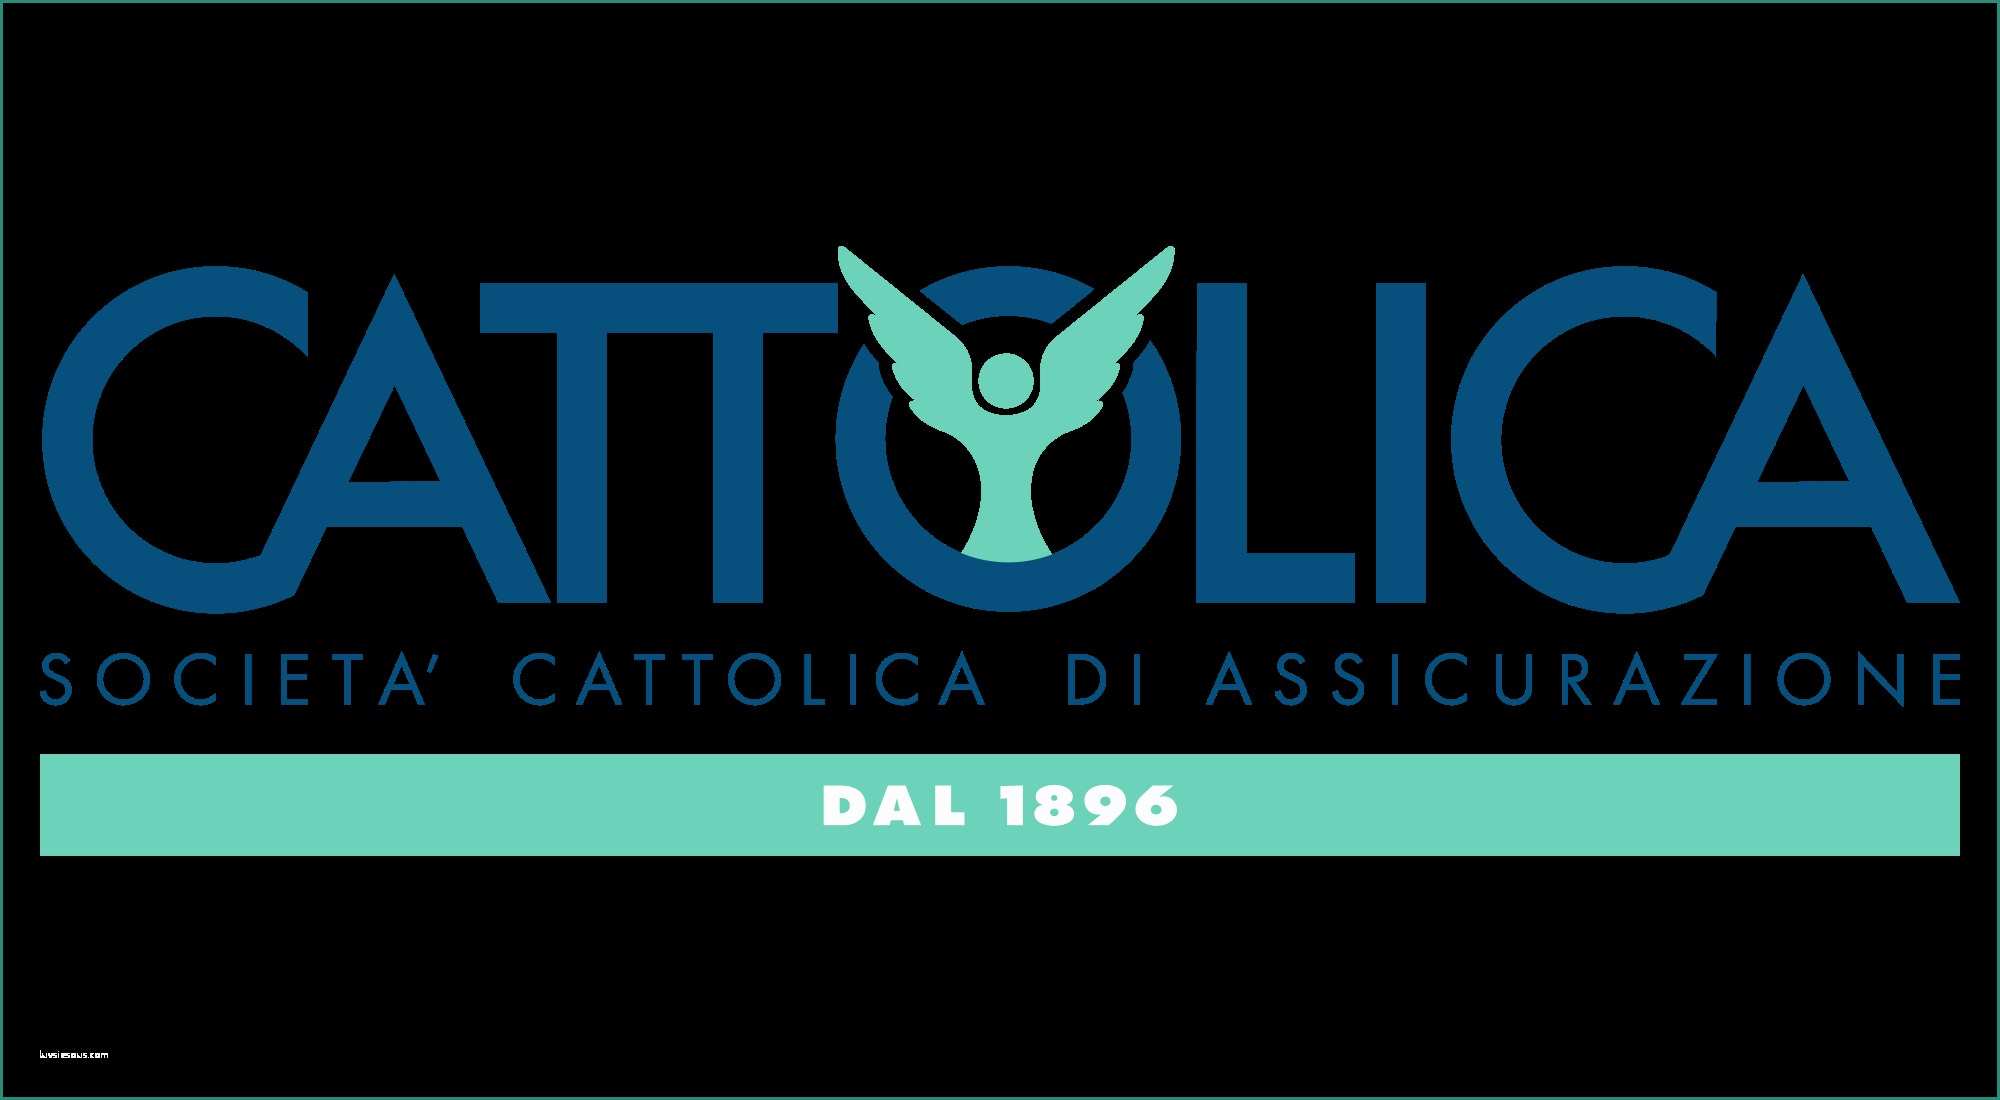 Linear assicurazioni Recensioni E Title 99 99 Con Linear assicurazioni Opinioni E Cattolica